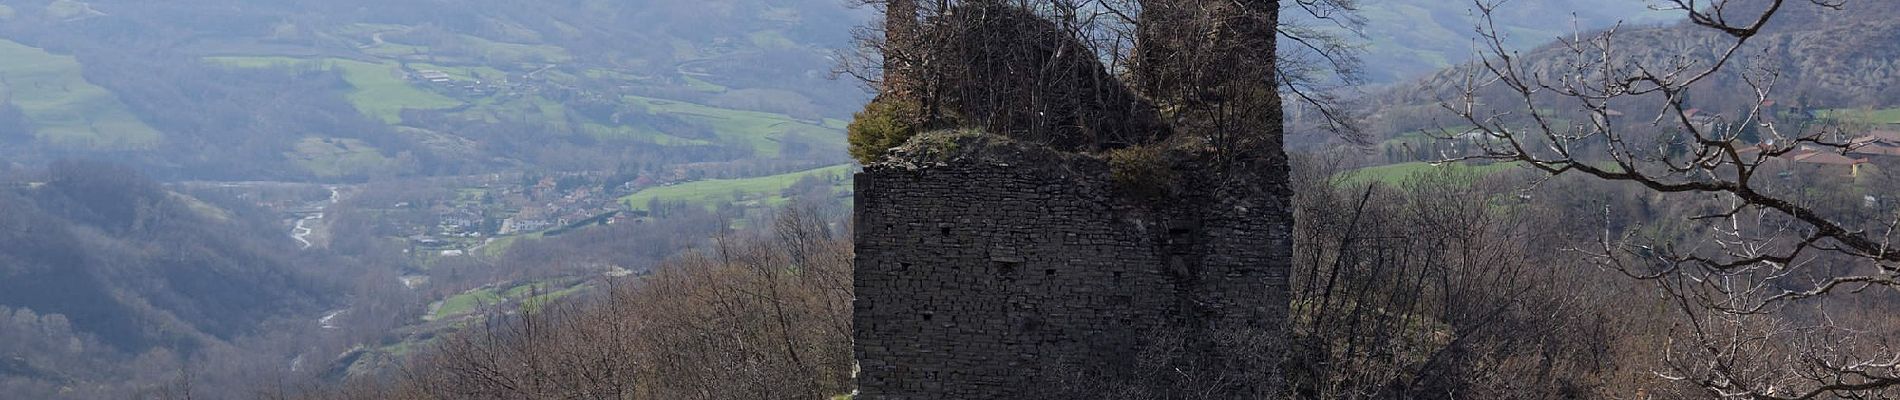 Trail On foot Bardi - Percorso 803 - Lavacchielli - Cerreto - Bre' - Pieve di Gravago - Brugnola - Monte Disperata - Photo